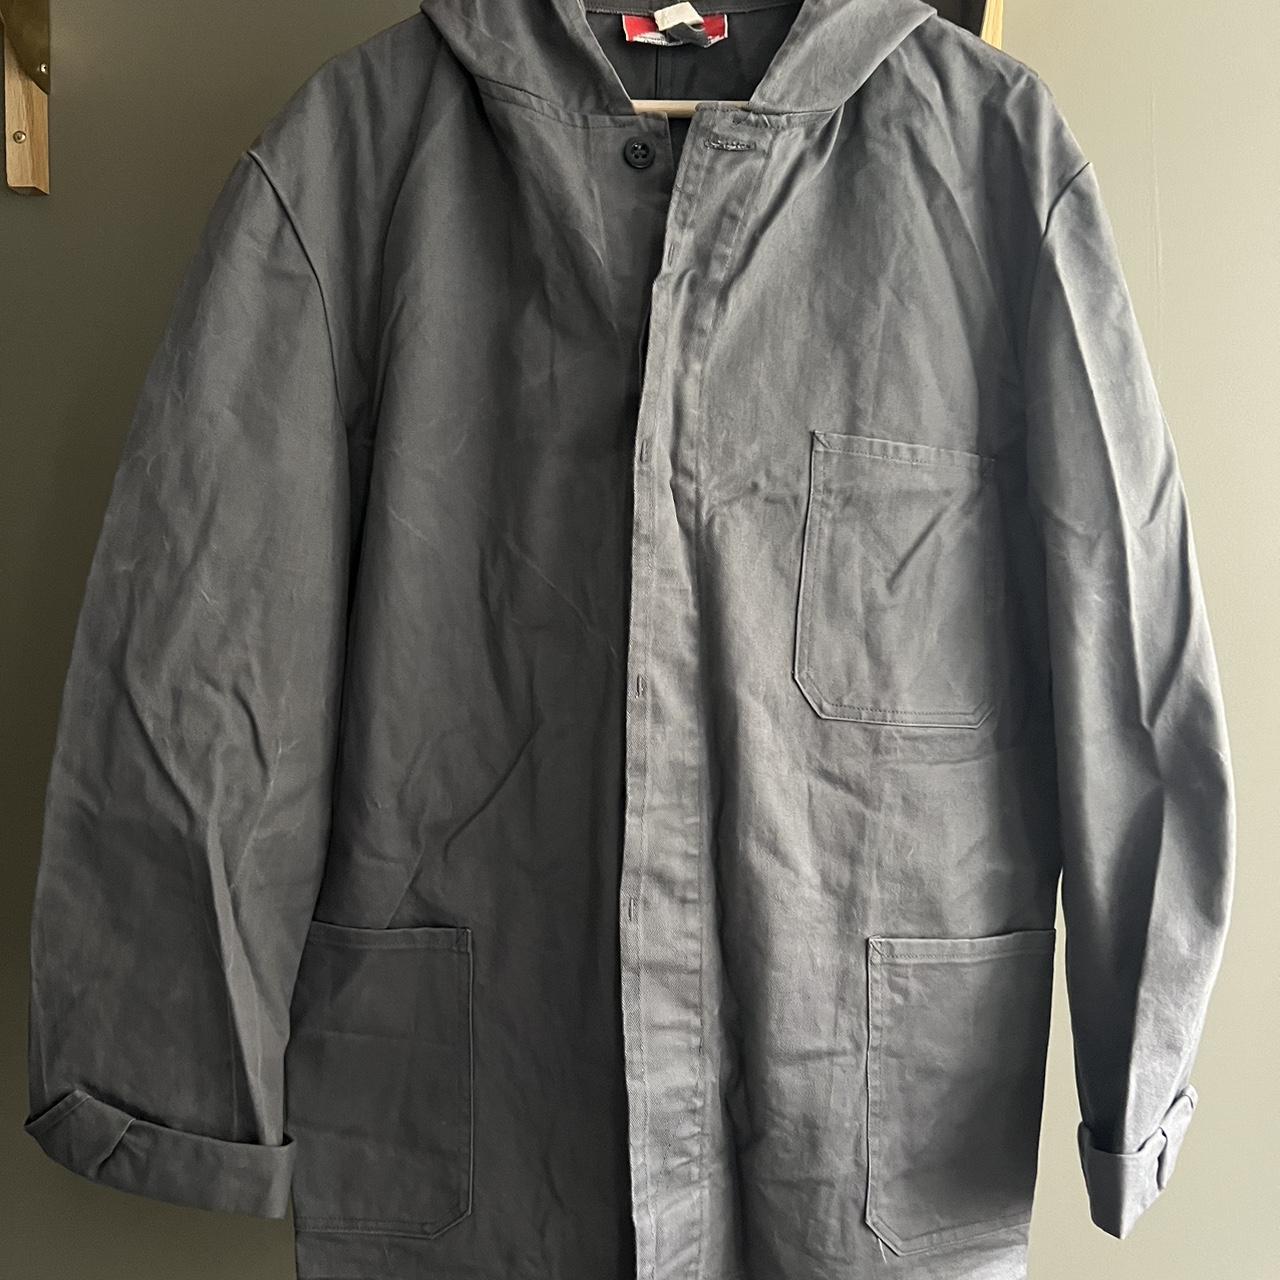 Vintage jacket work style Size large Grey Fit... - Depop